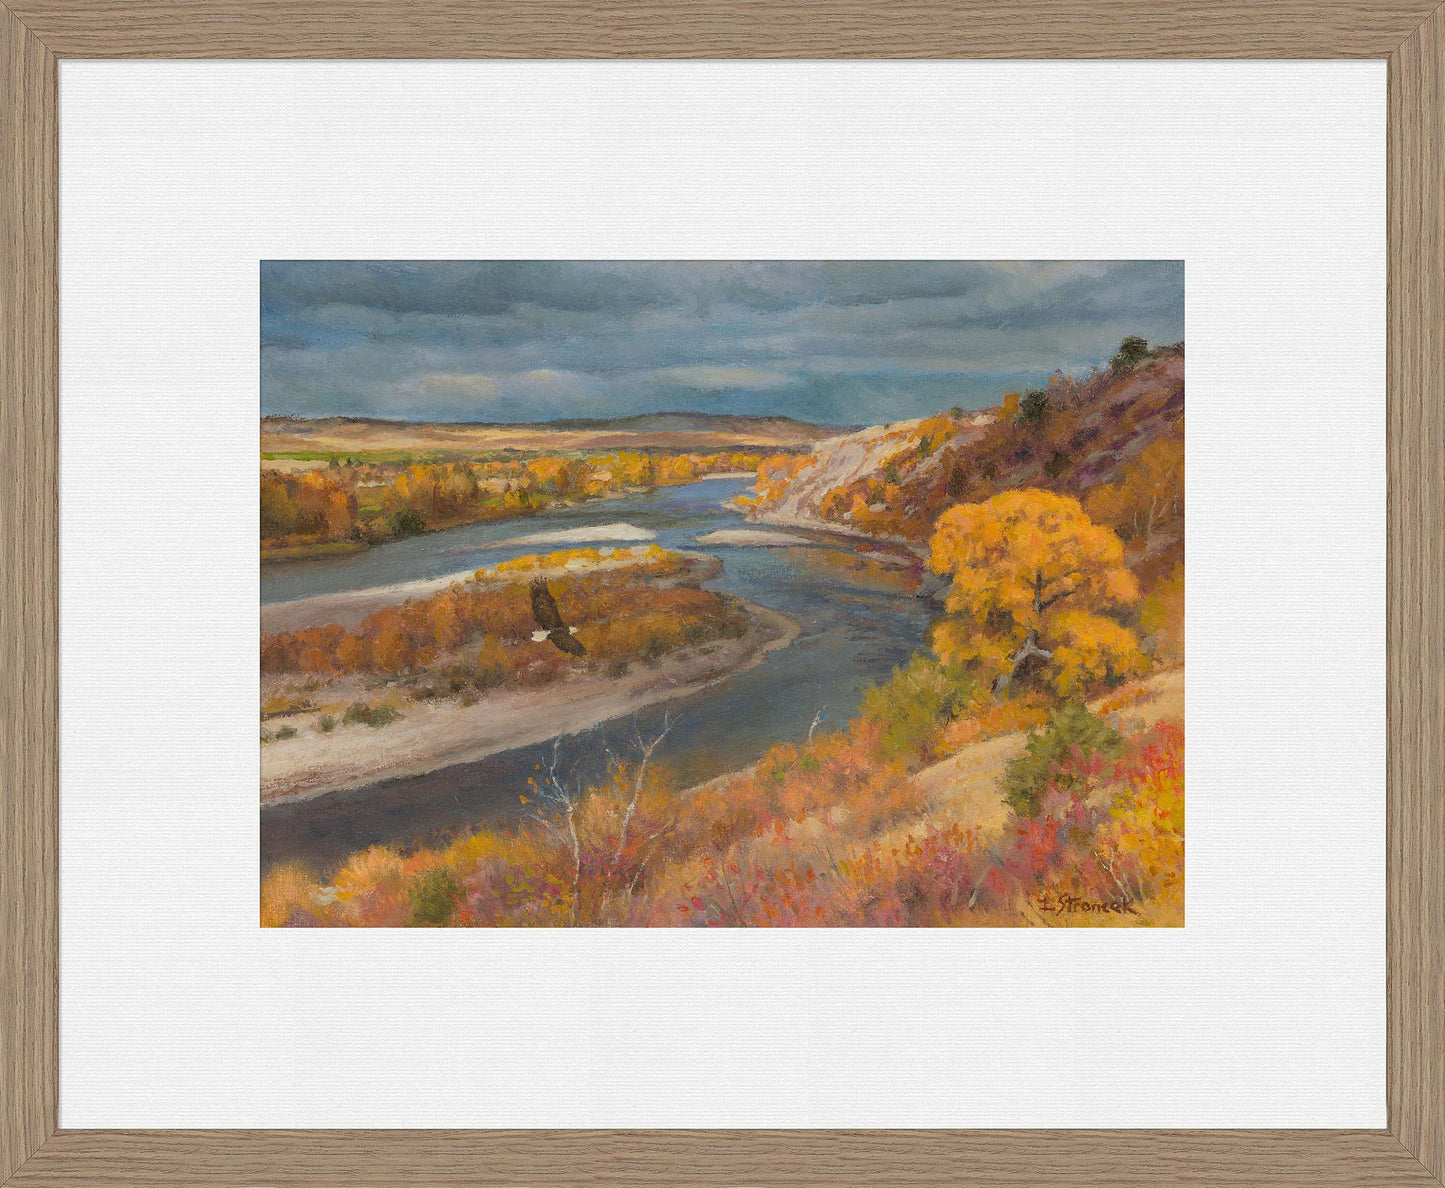 the-river-in-a-golden-mood-framed-print-lee-stroncek-F838650089W.jpg